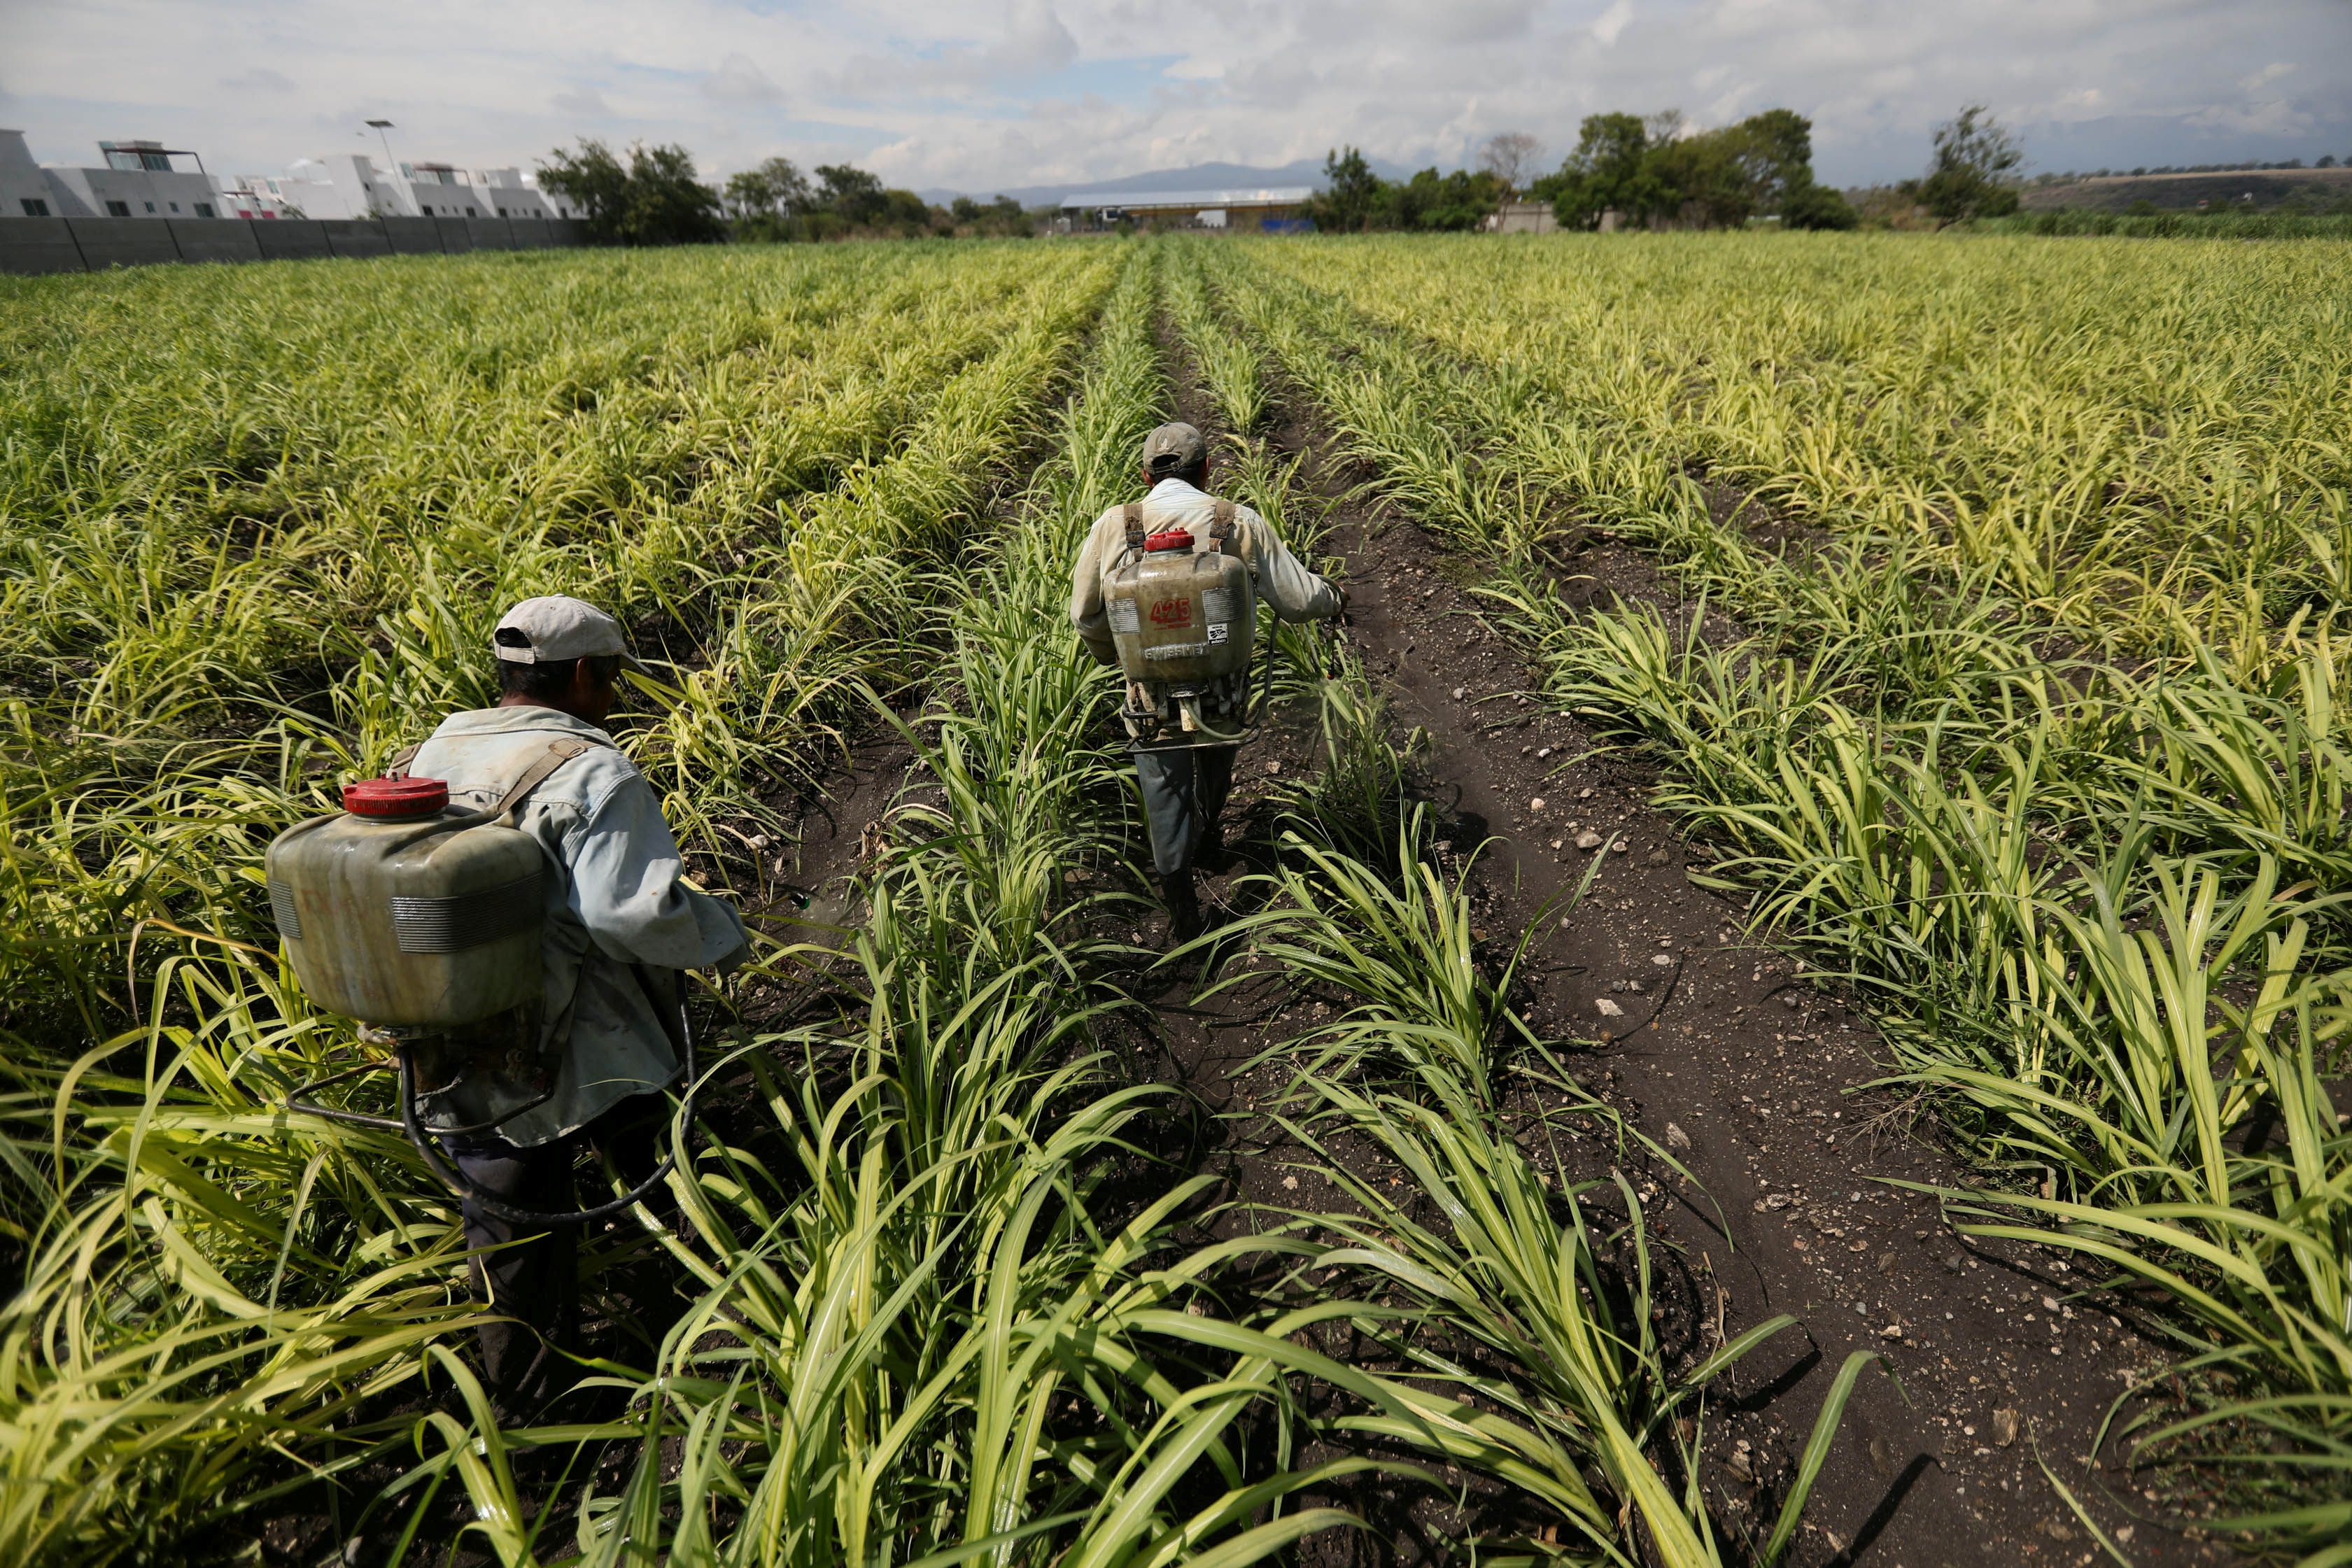 Actualmente existe una prohibición del trabajo adolescente en actividades agrícolas. (Foto: REUTERS/Edgard Garrido/File Photo)